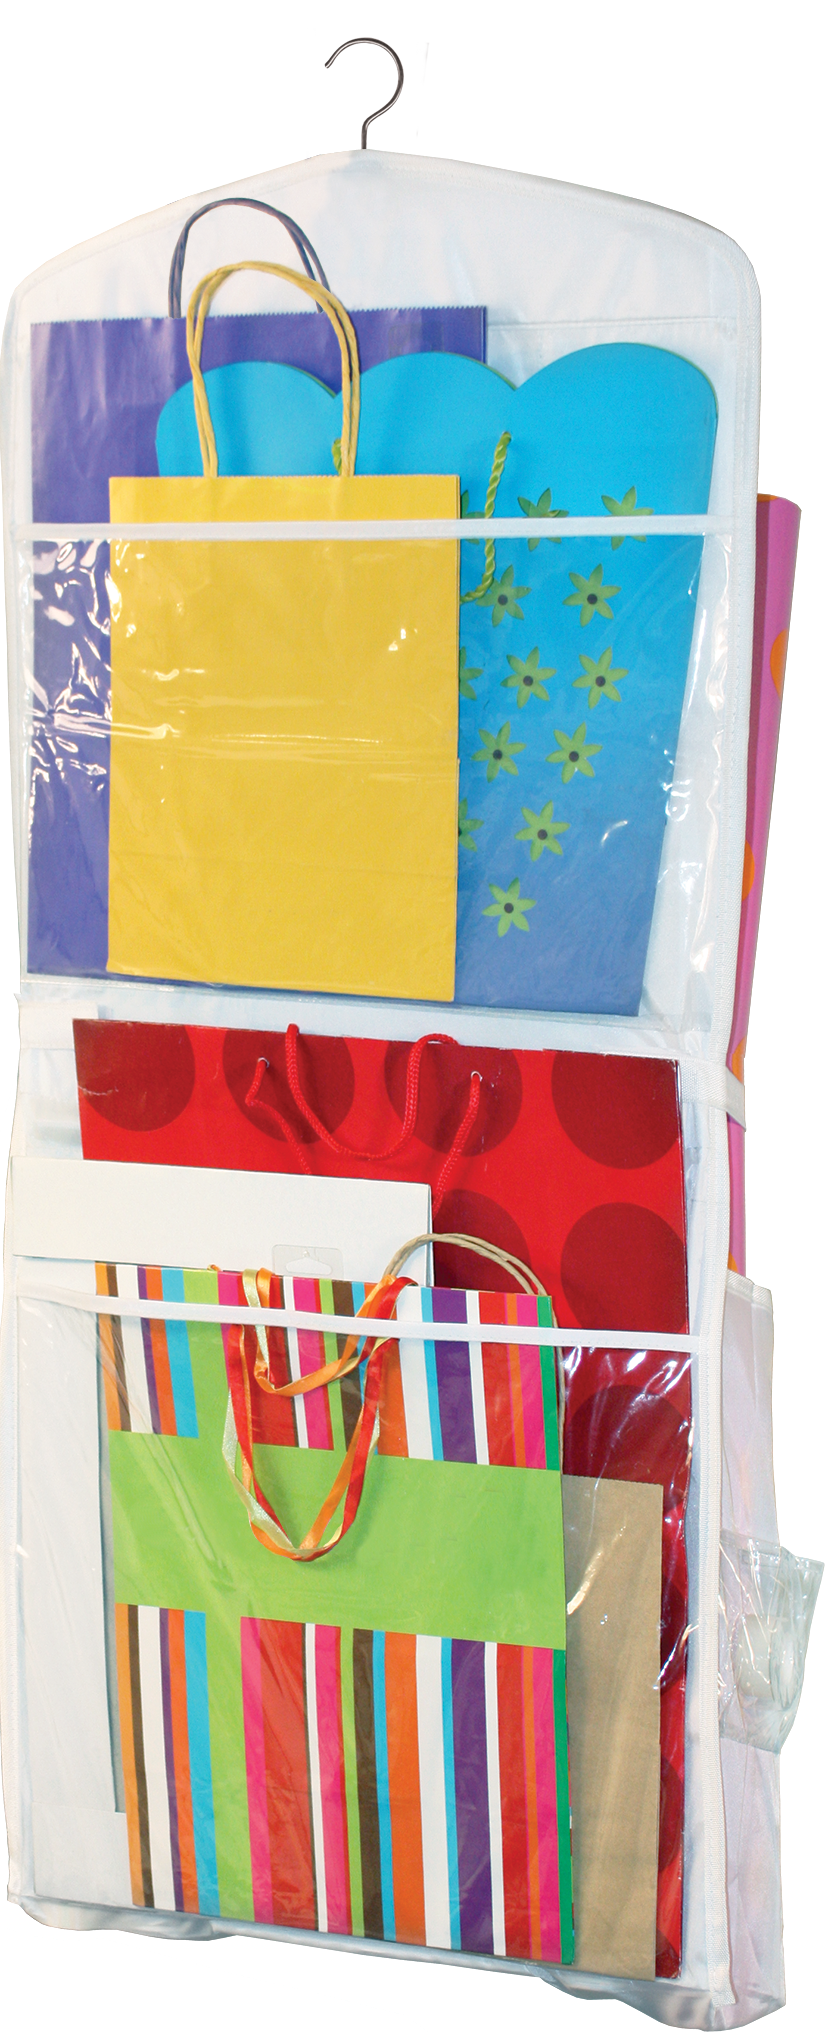 Jokari - Gift Wrap Organizer - Hanging